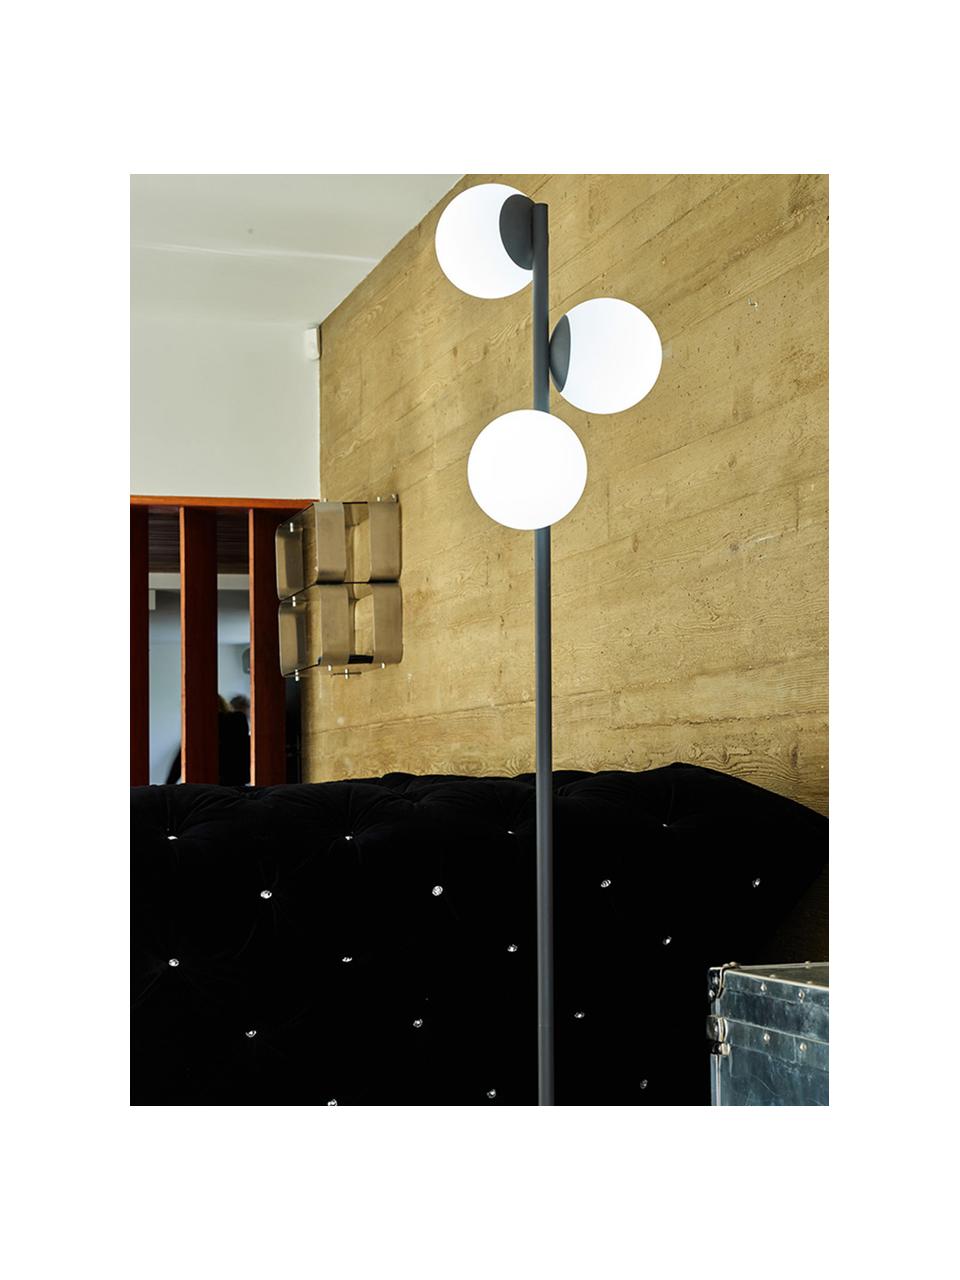 Zewnętrzna lampa z funkcją przyciemniania i wtyczką Globy, Czarny, biały, Ø 42 x W 175 cm